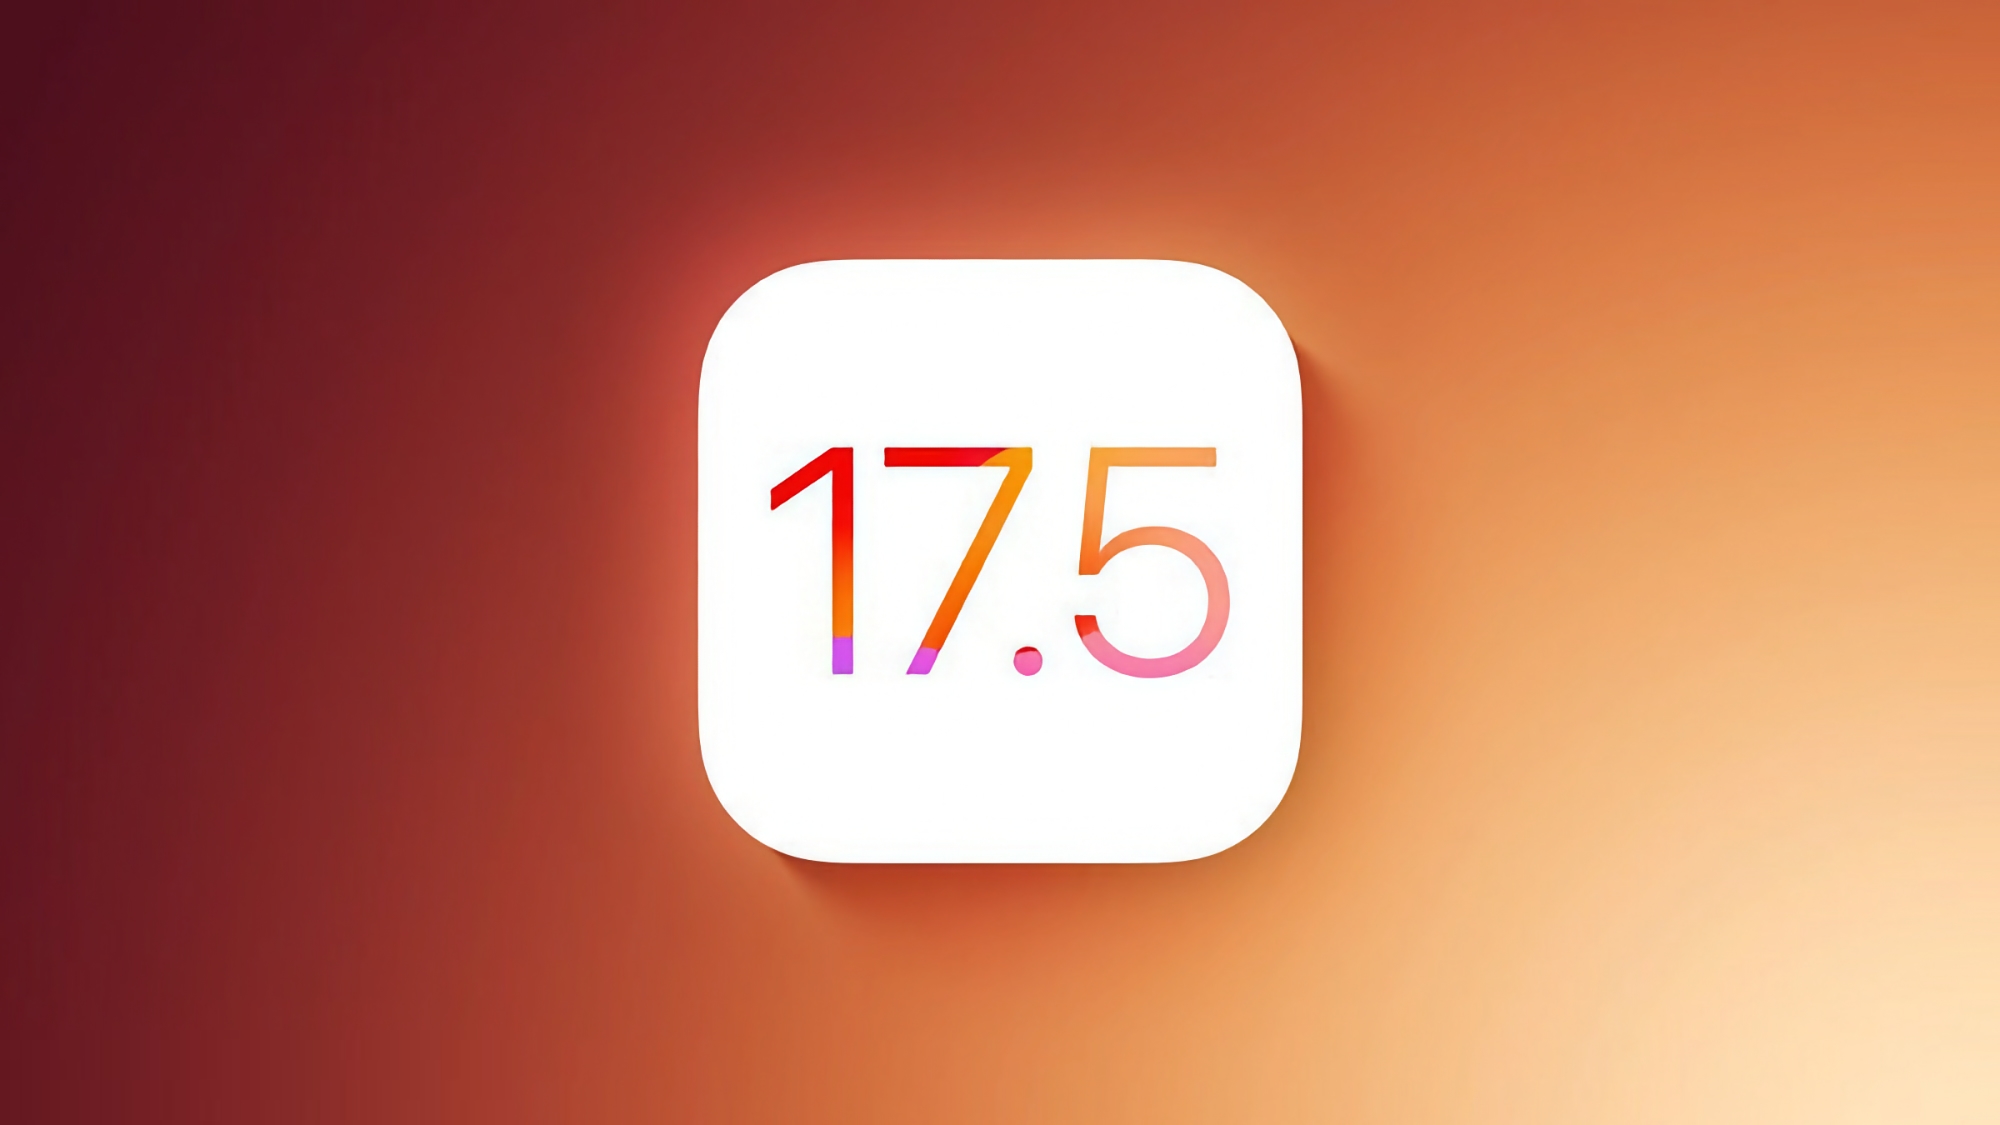 Apple выпустила новые бета-версии iOS 17.5 и iPadOS 17.5 для разработчиков